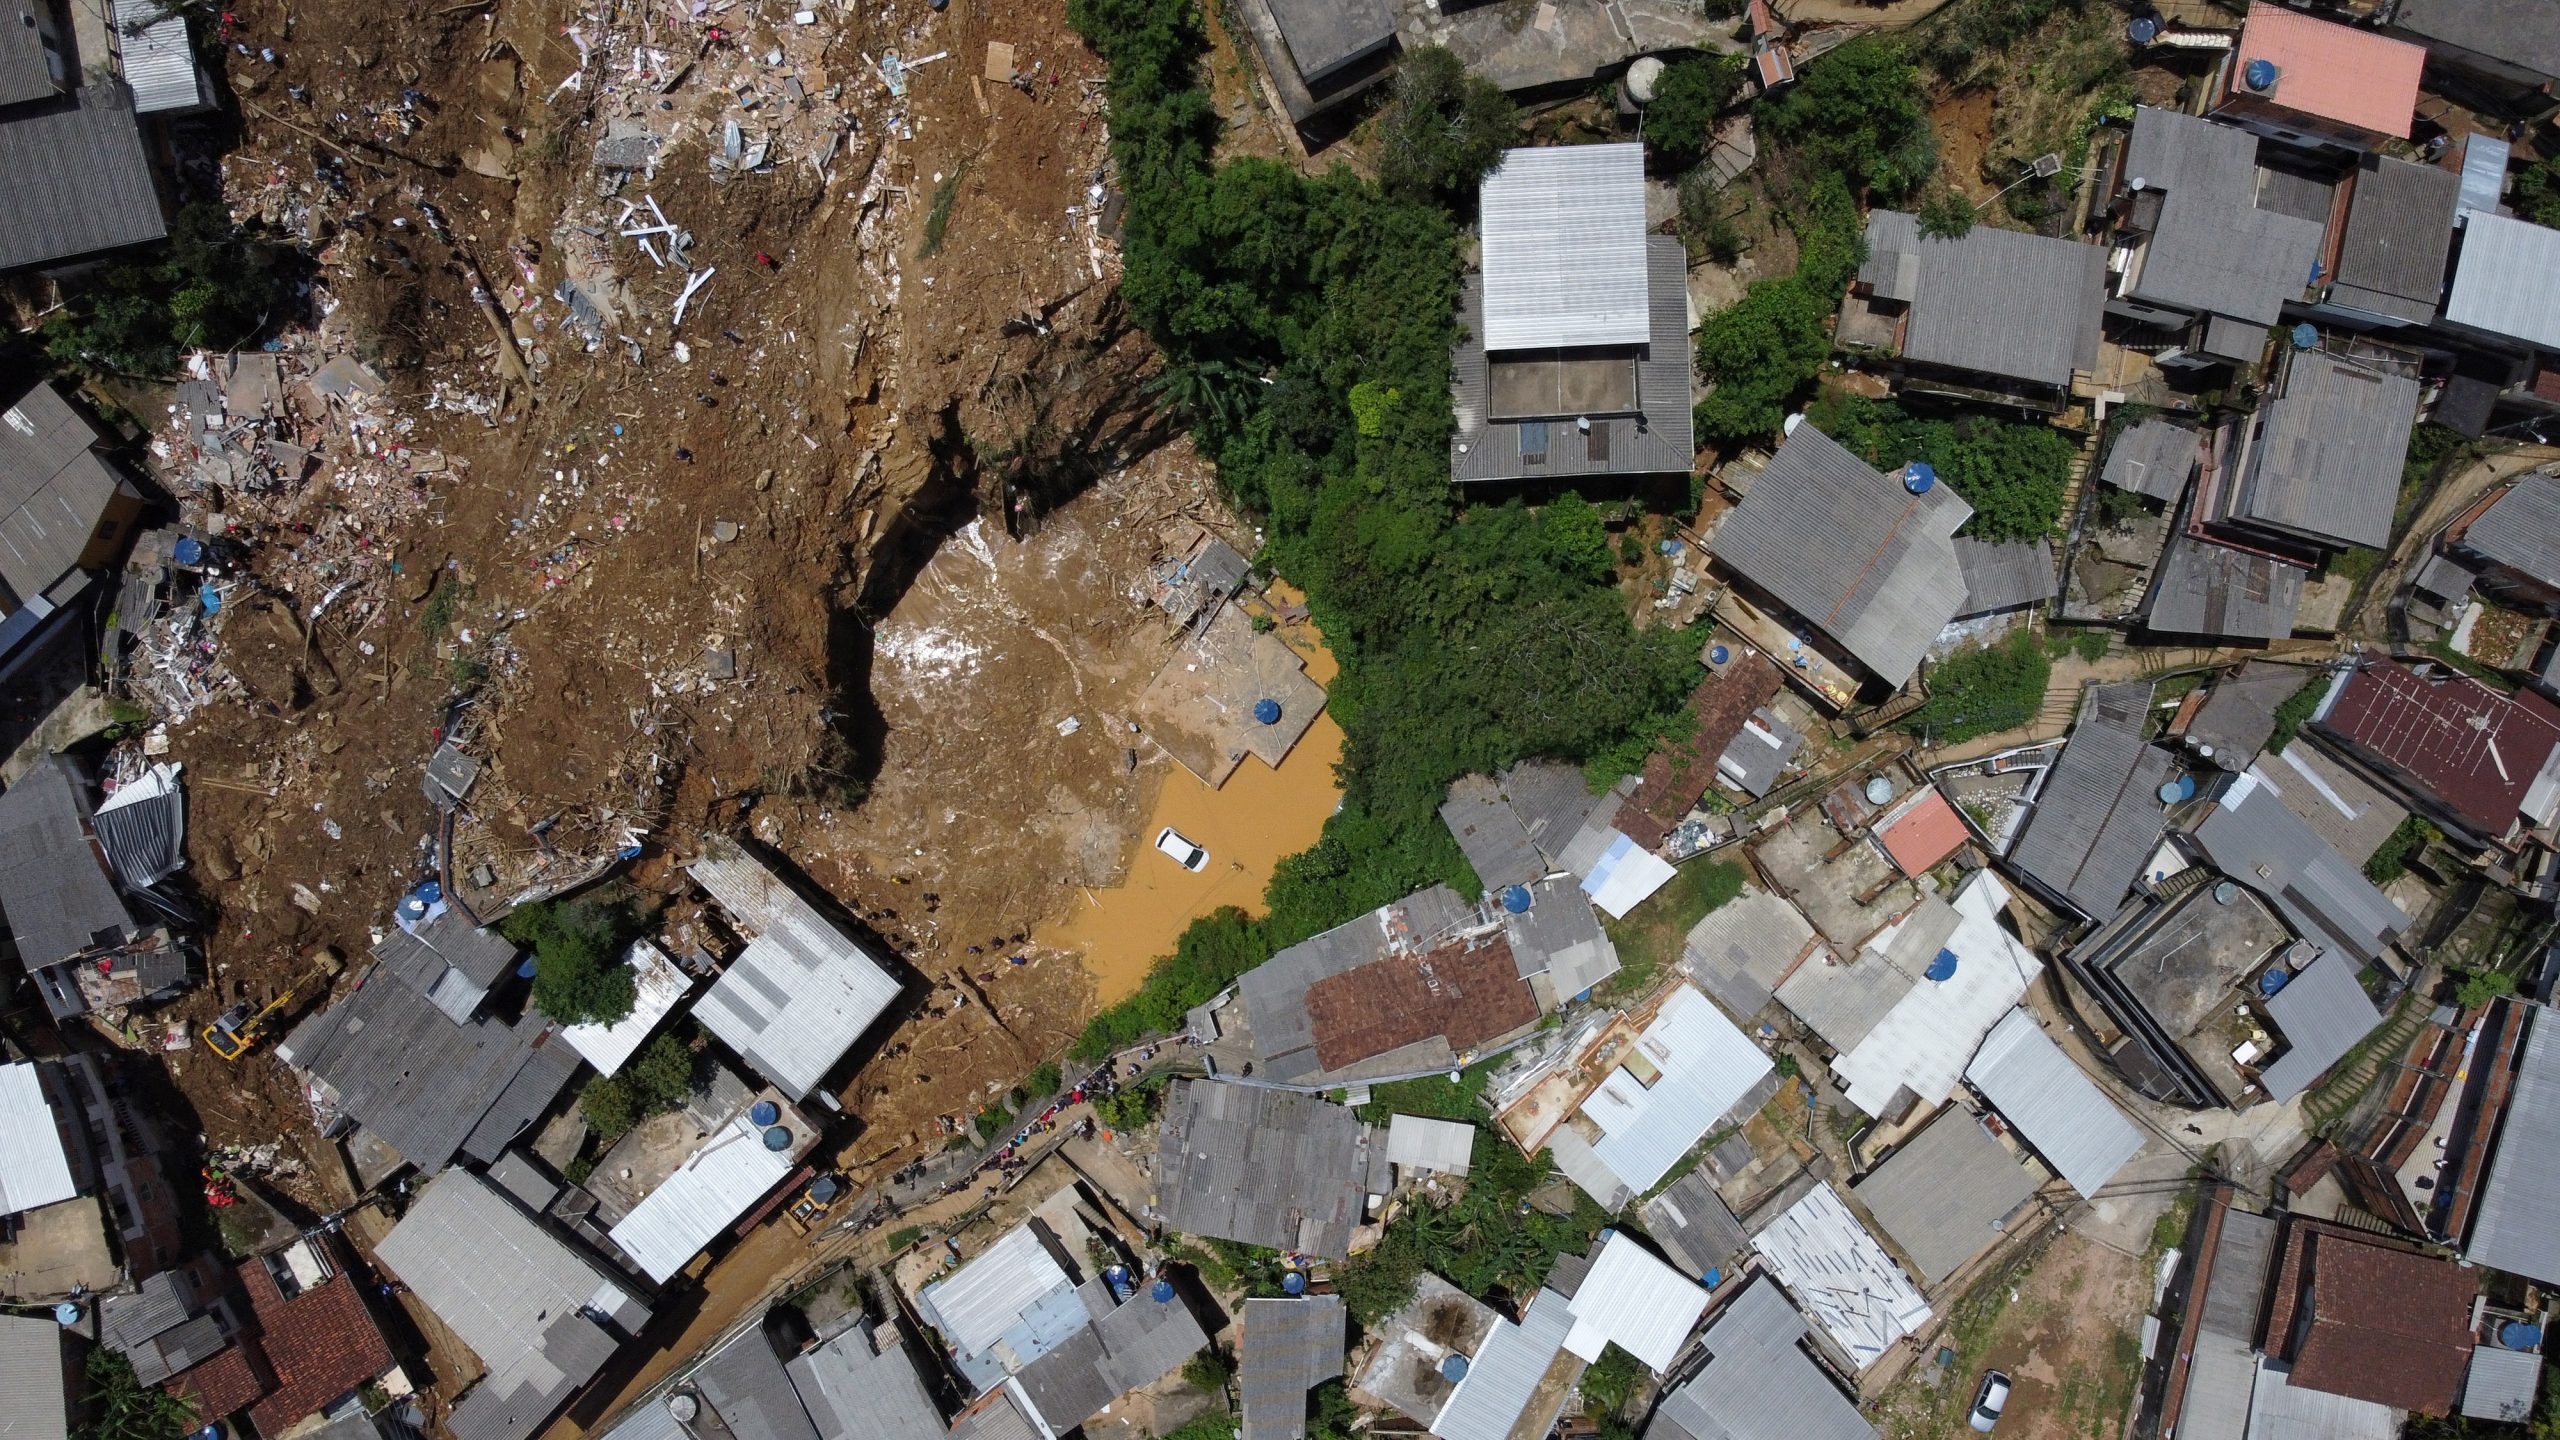 Brazil, 8 të vdekur nga rrëshqitjet e dheut